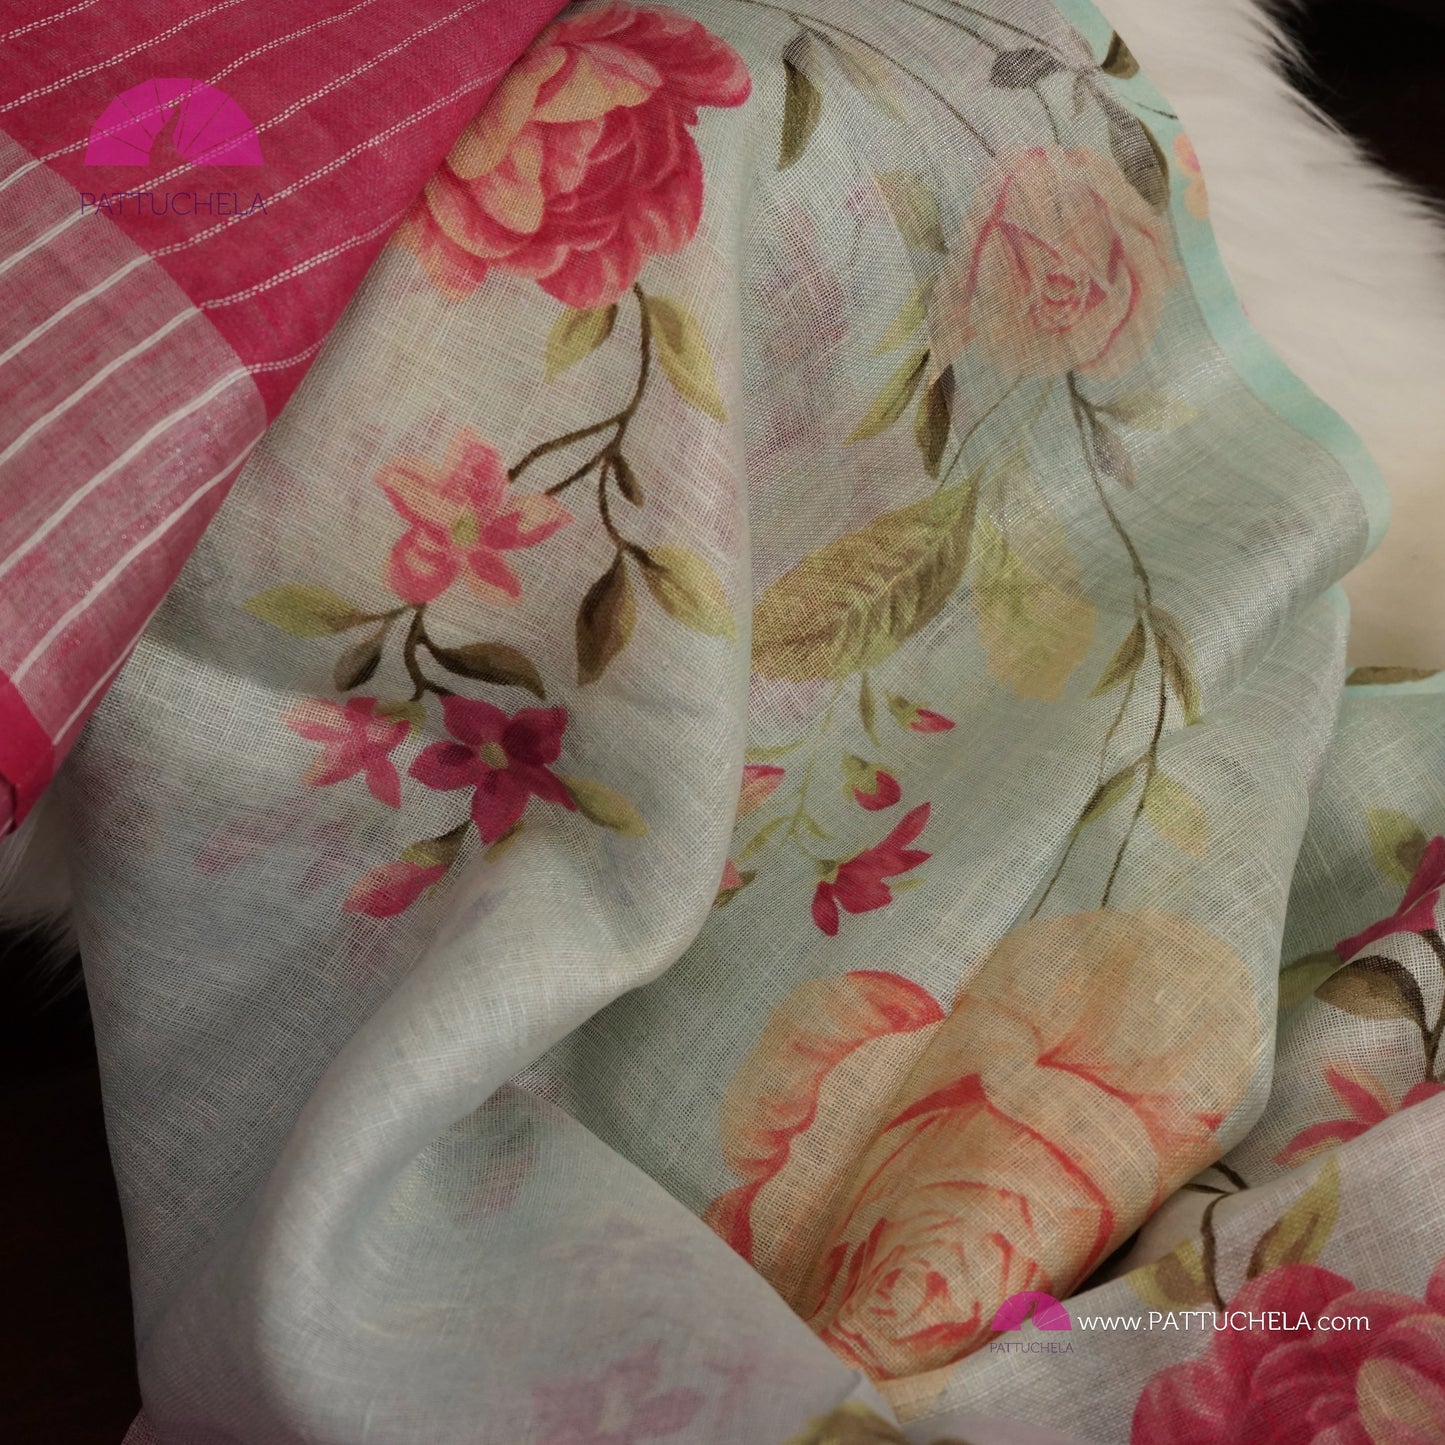 Beautiful Digital Printed dual tone Organic Linen Sari in floral prints